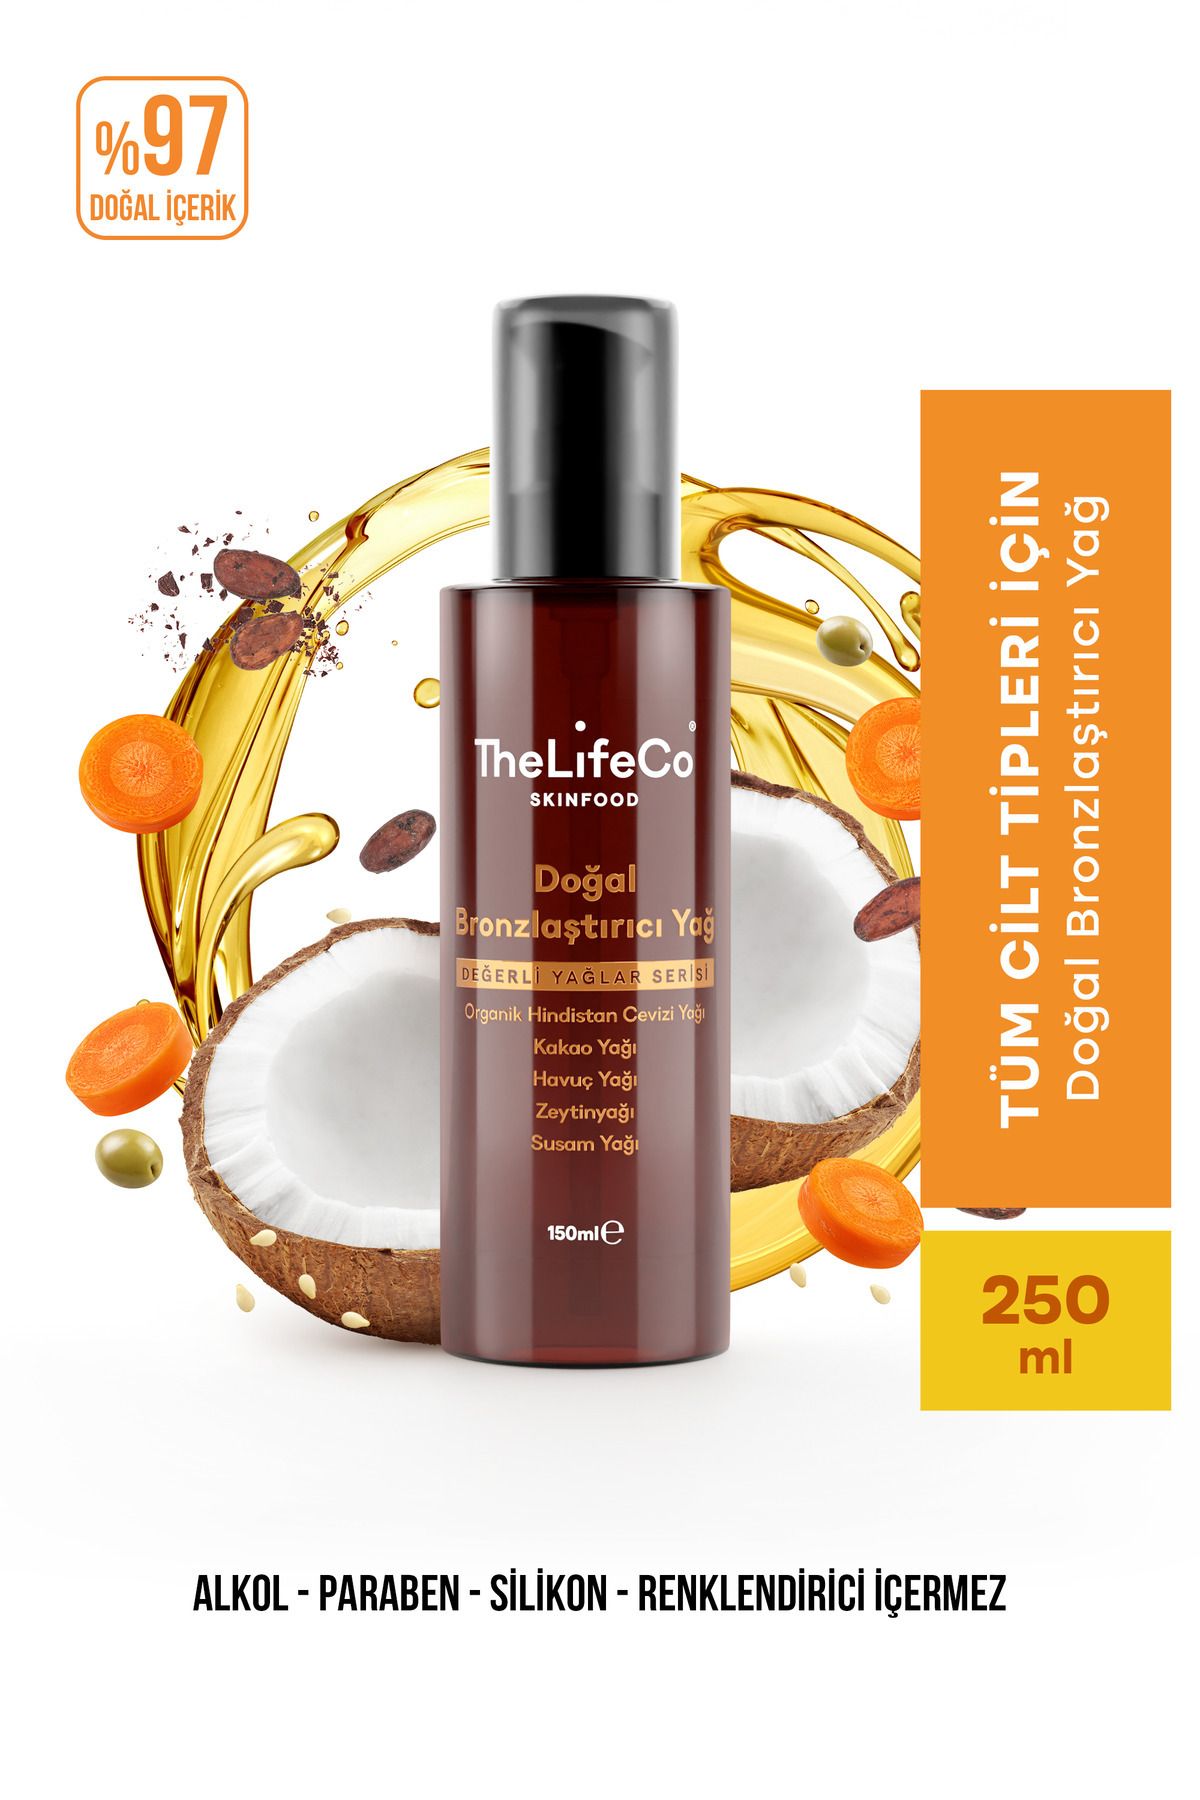 TheLifeCo Skinfood Değerli Yağlar Serisi Doğal Bronzlaştırıcı Güneş Yağı 150 ml